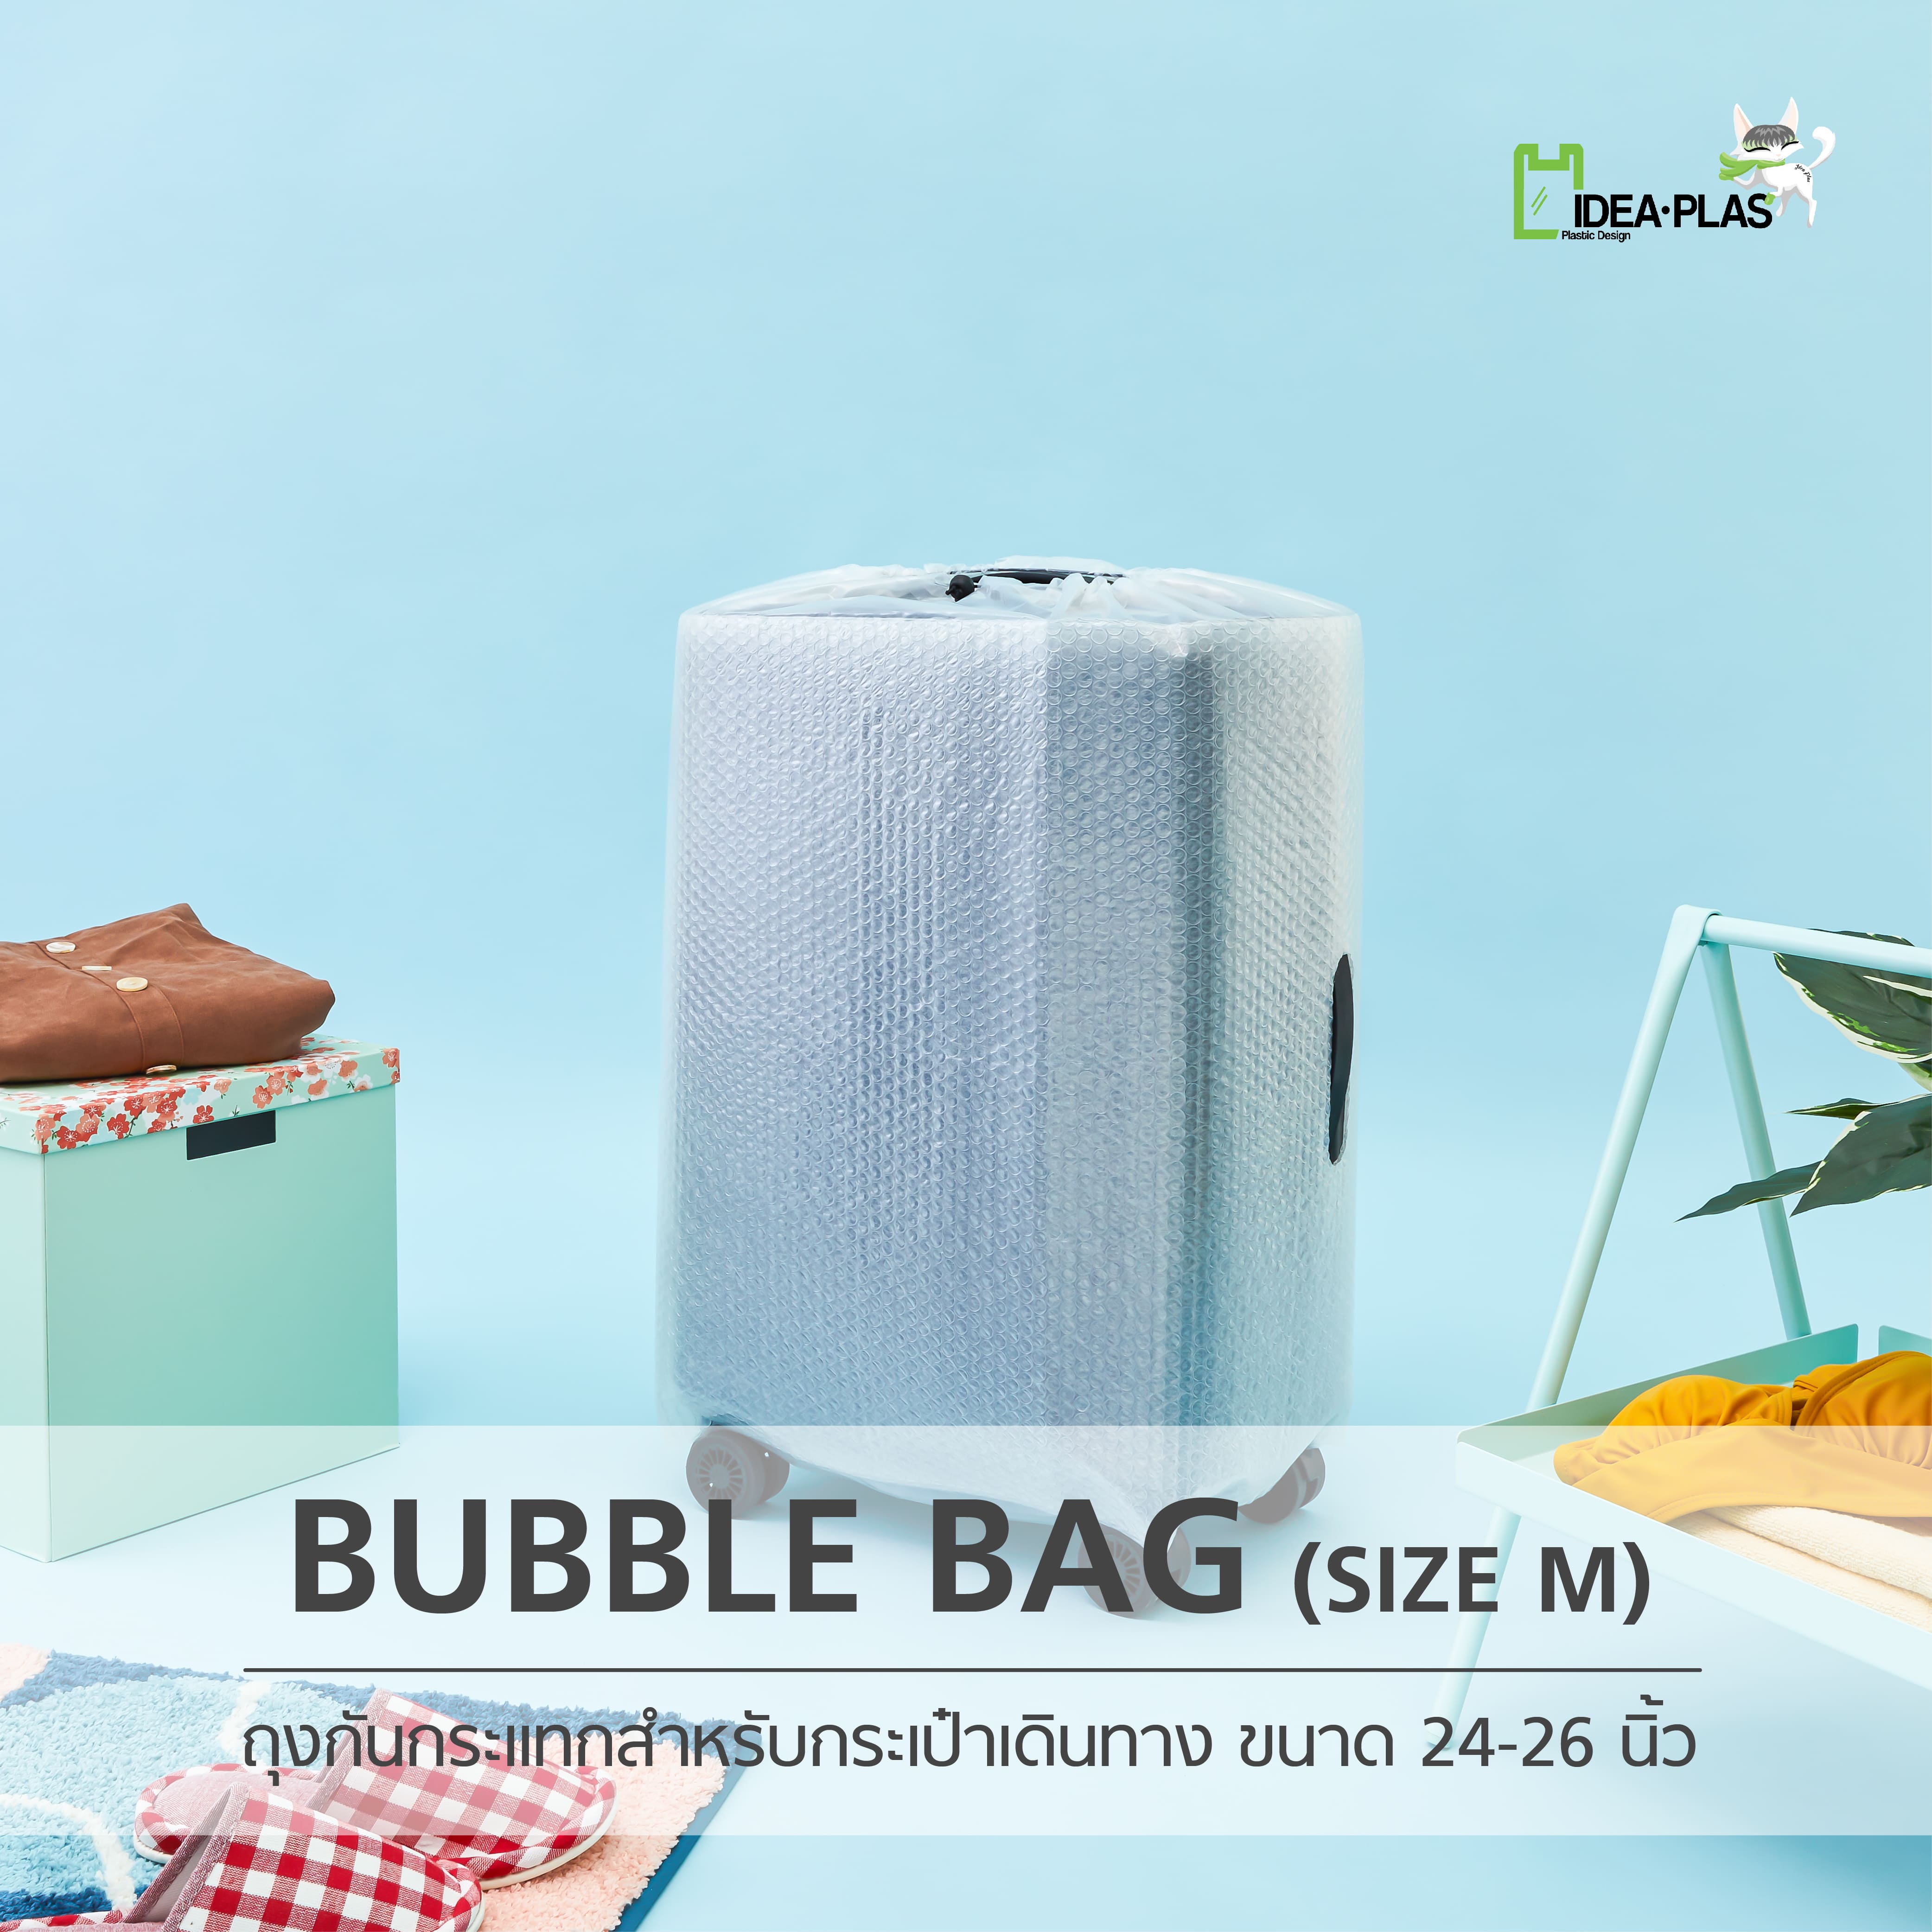 ถุงคลุมกระเป๋าเดินทาง (Bubble Bag) Size M - IDEAPLAS กันกระแทกและรอยขีดข่วน